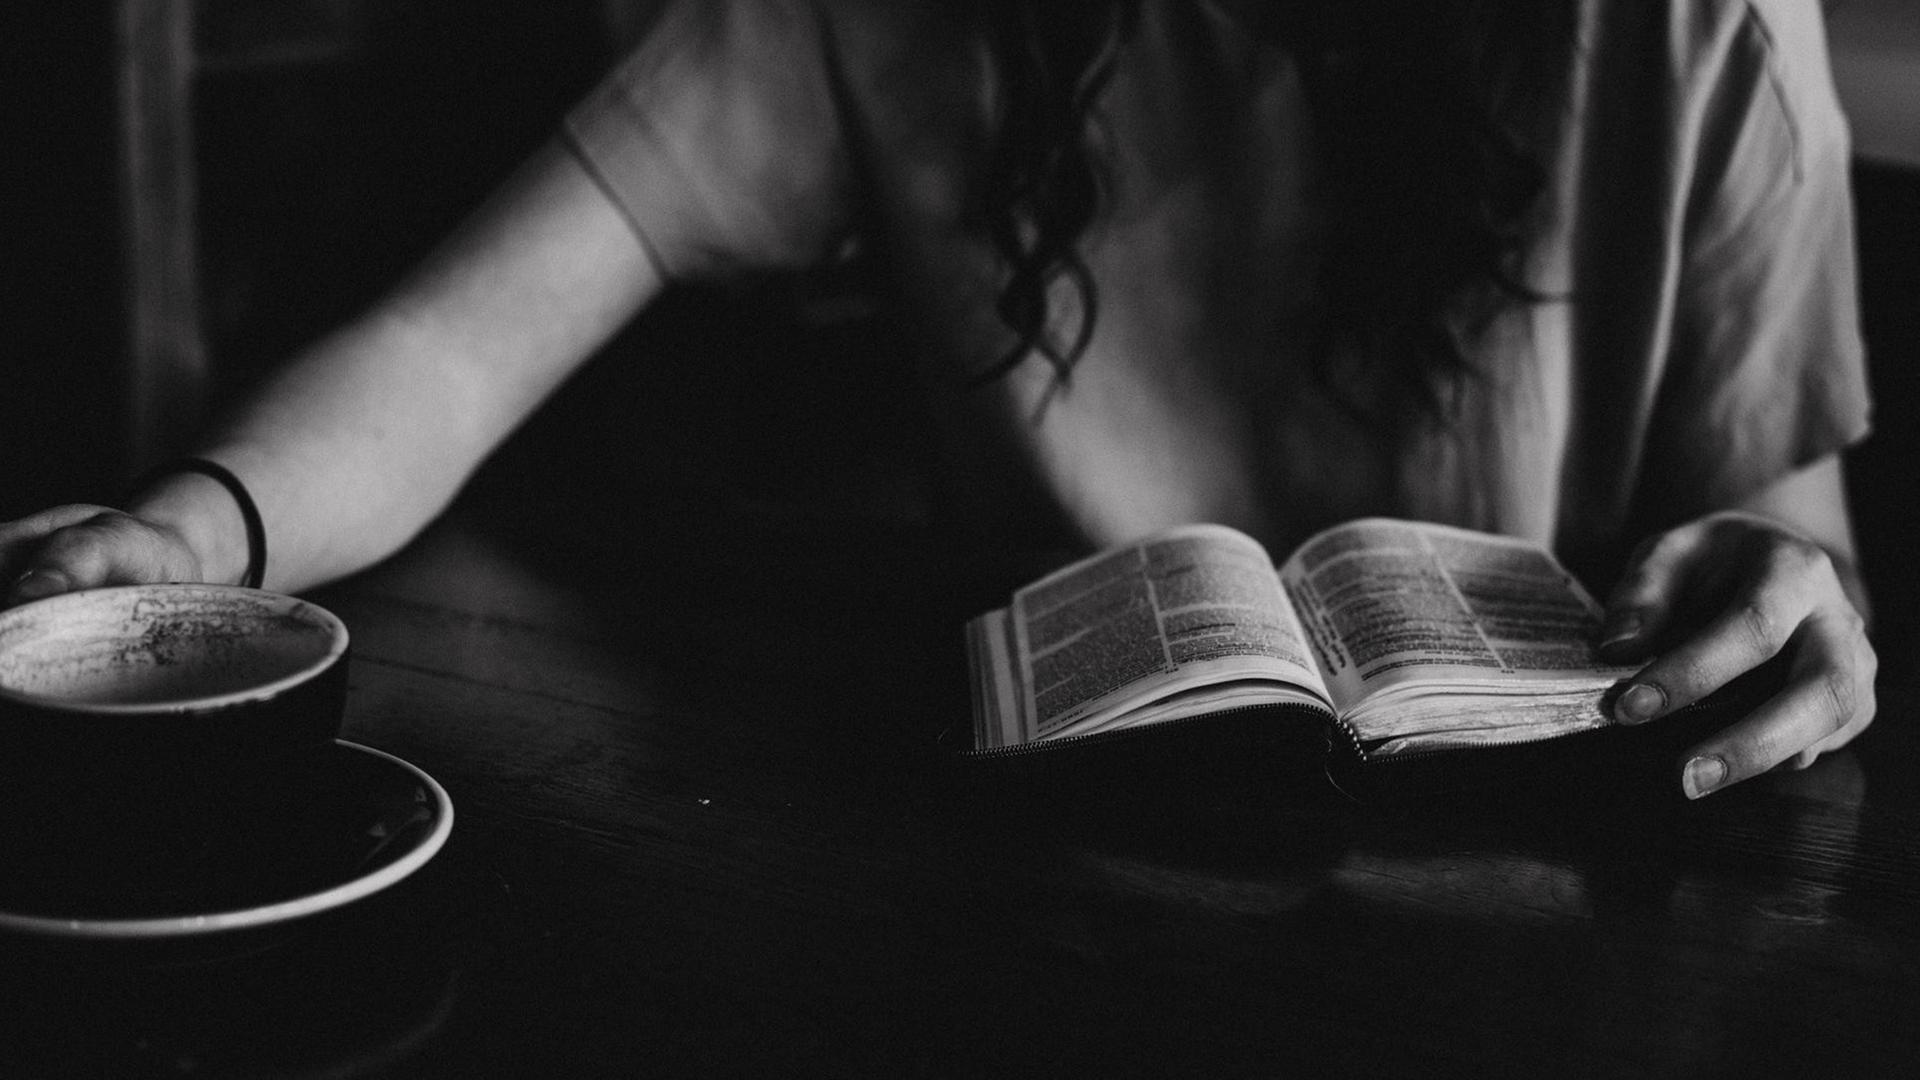 SW-Foto, das die Hände einer Frau zeigt, die in einem Cafe sitzt, und bei einer Tasse Kaffee ein Buch liest.